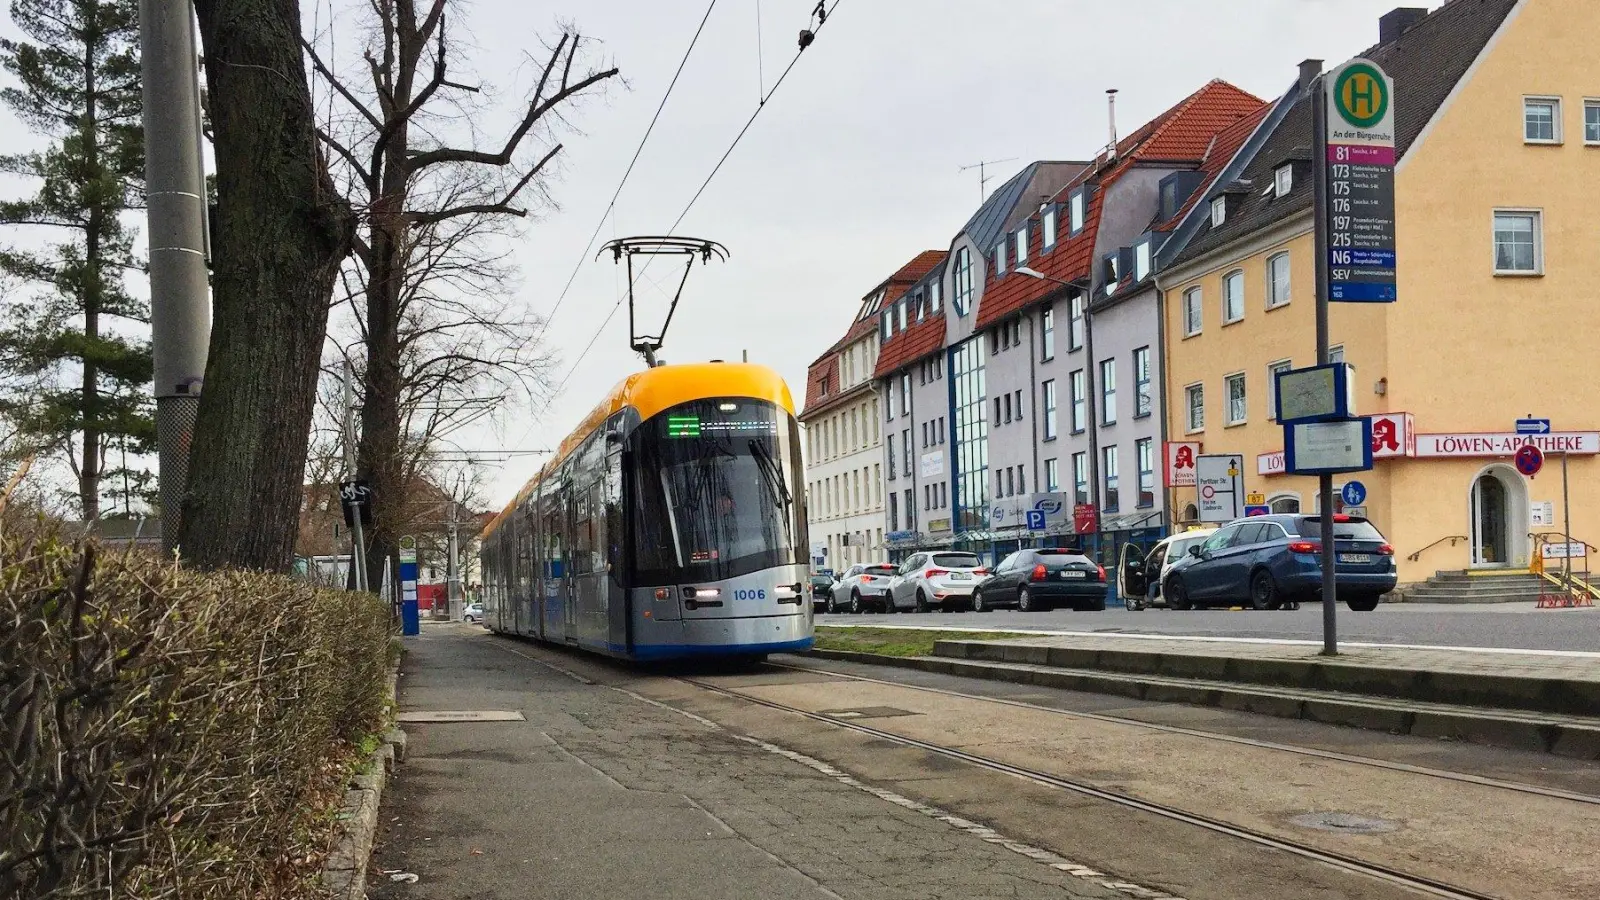 Unbekannter verletzt Straßenbahnfahrer in Taucha (Foto: taucha-kompakt.de)